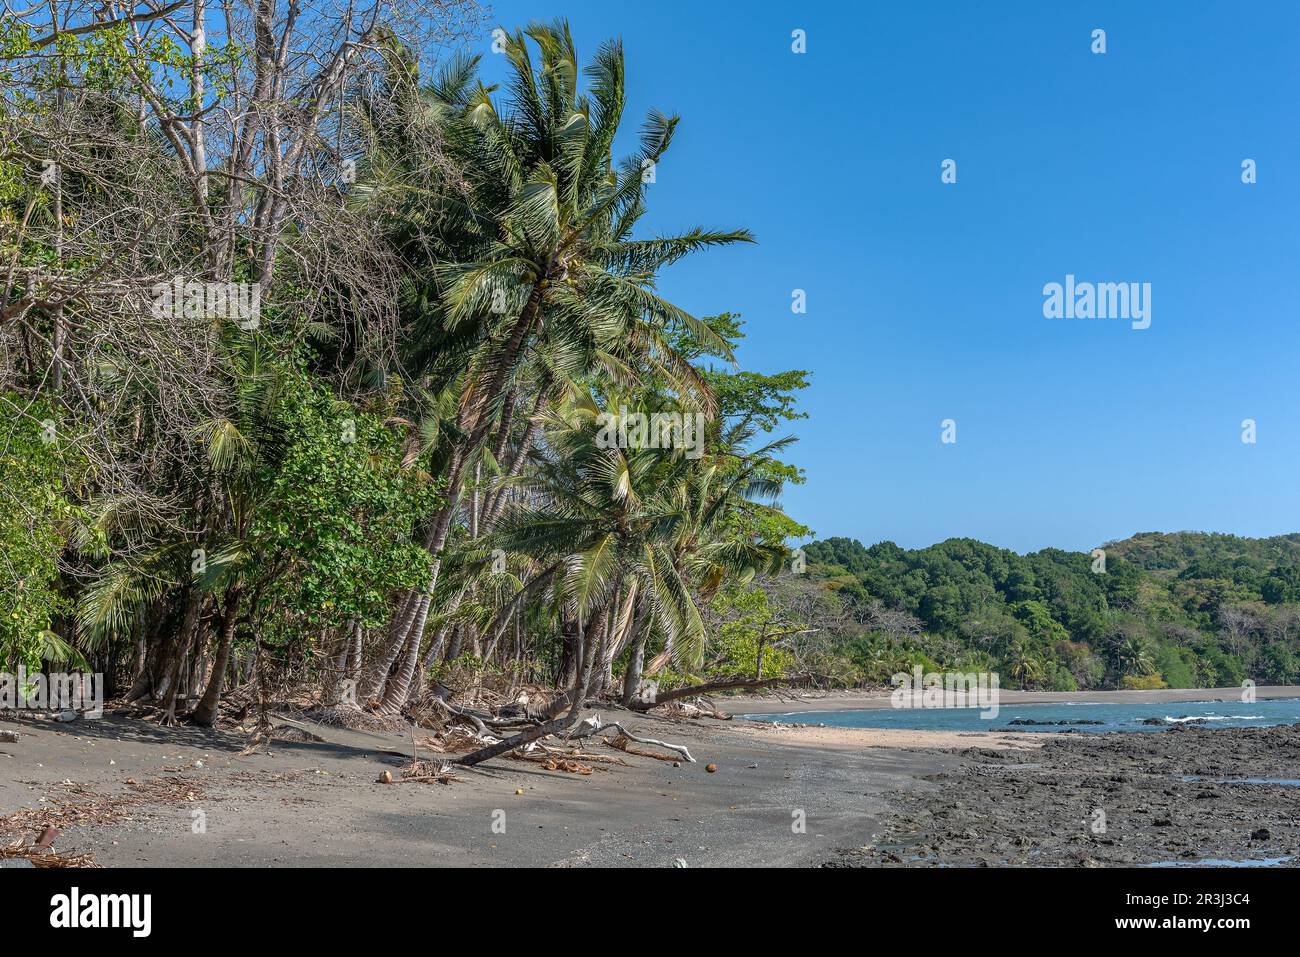 Plage tropicale sur l'île de cebaco, Panama Banque D'Images